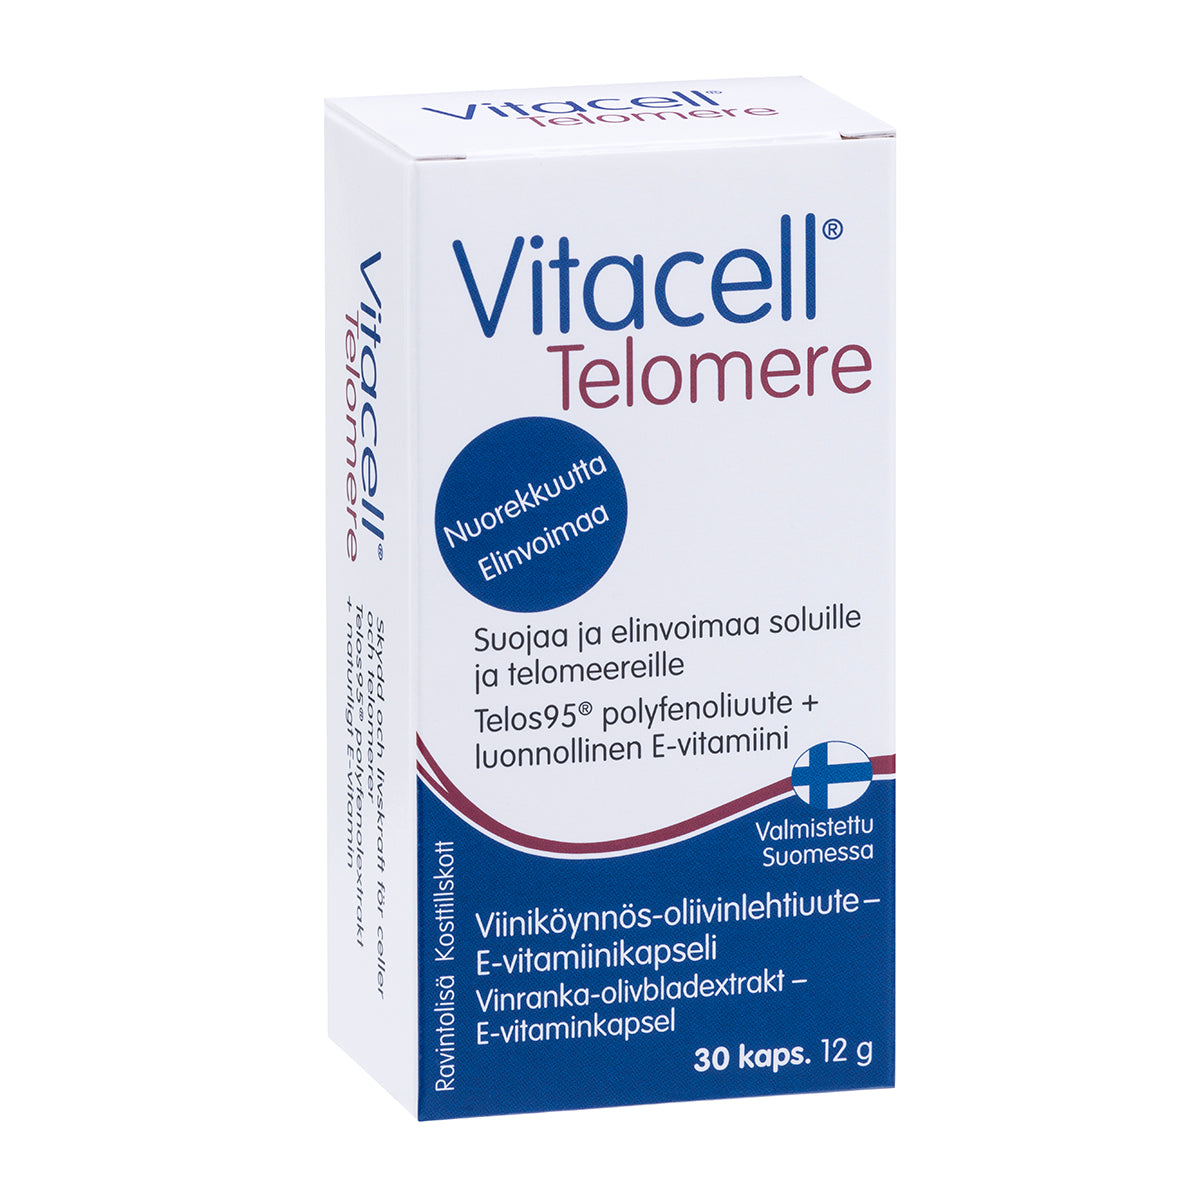 Vitacell Telomere-Hankintatukku-Hyvinvoinnin Tavaratalo